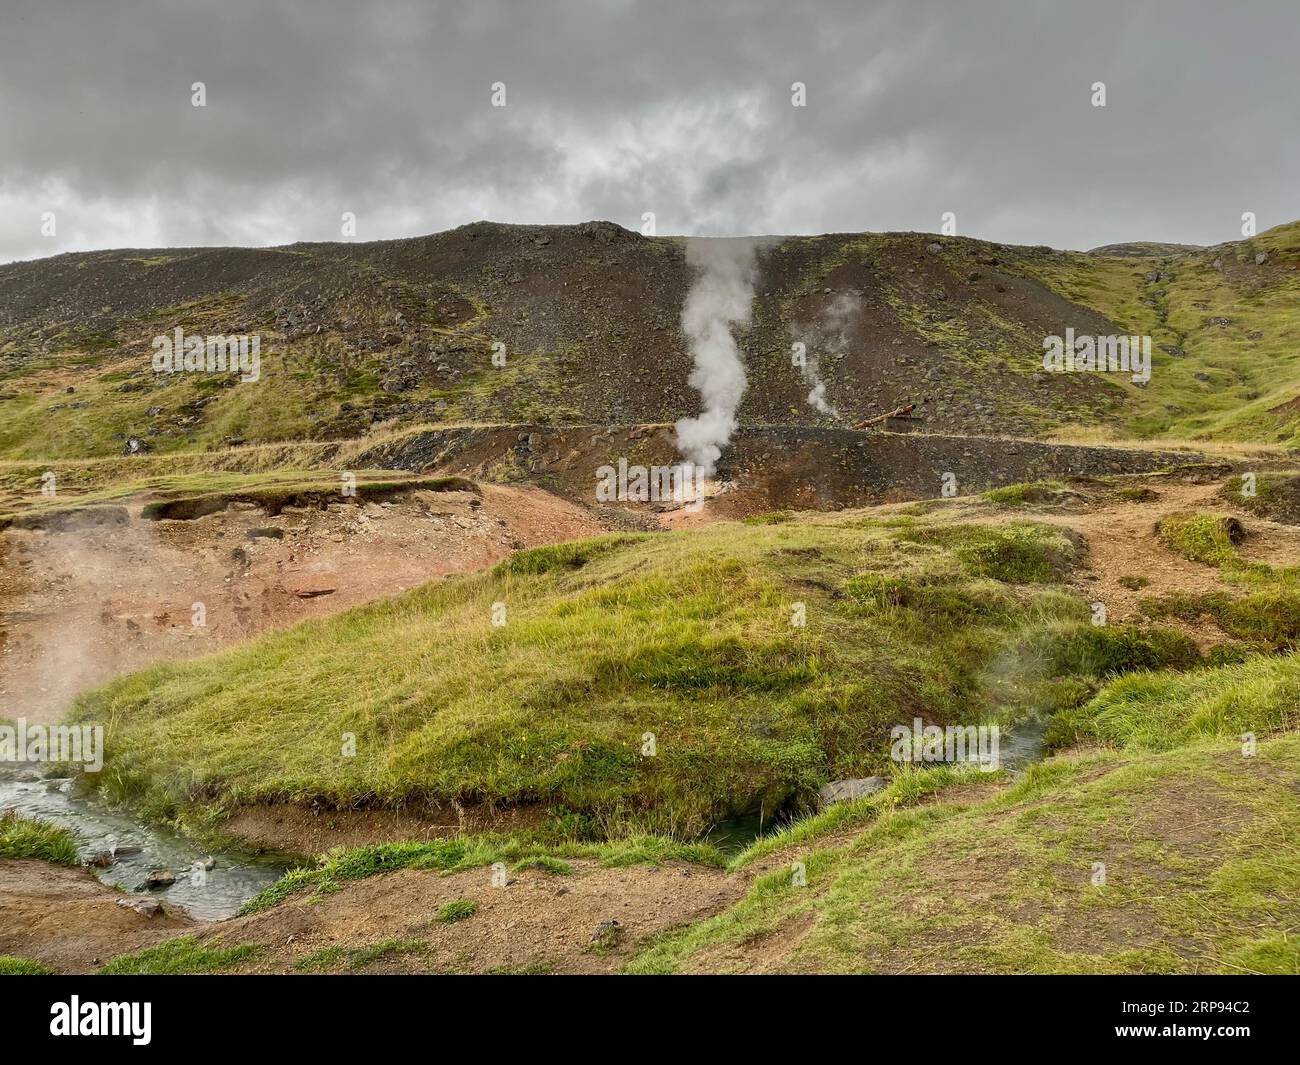 Randonnée, Reykjadalur Hot Springs (Steam Valley) est situé dans la partie sud de l'Islande. Smokey Hills serpentant les rivières et les piscines de boue visibles. Banque D'Images